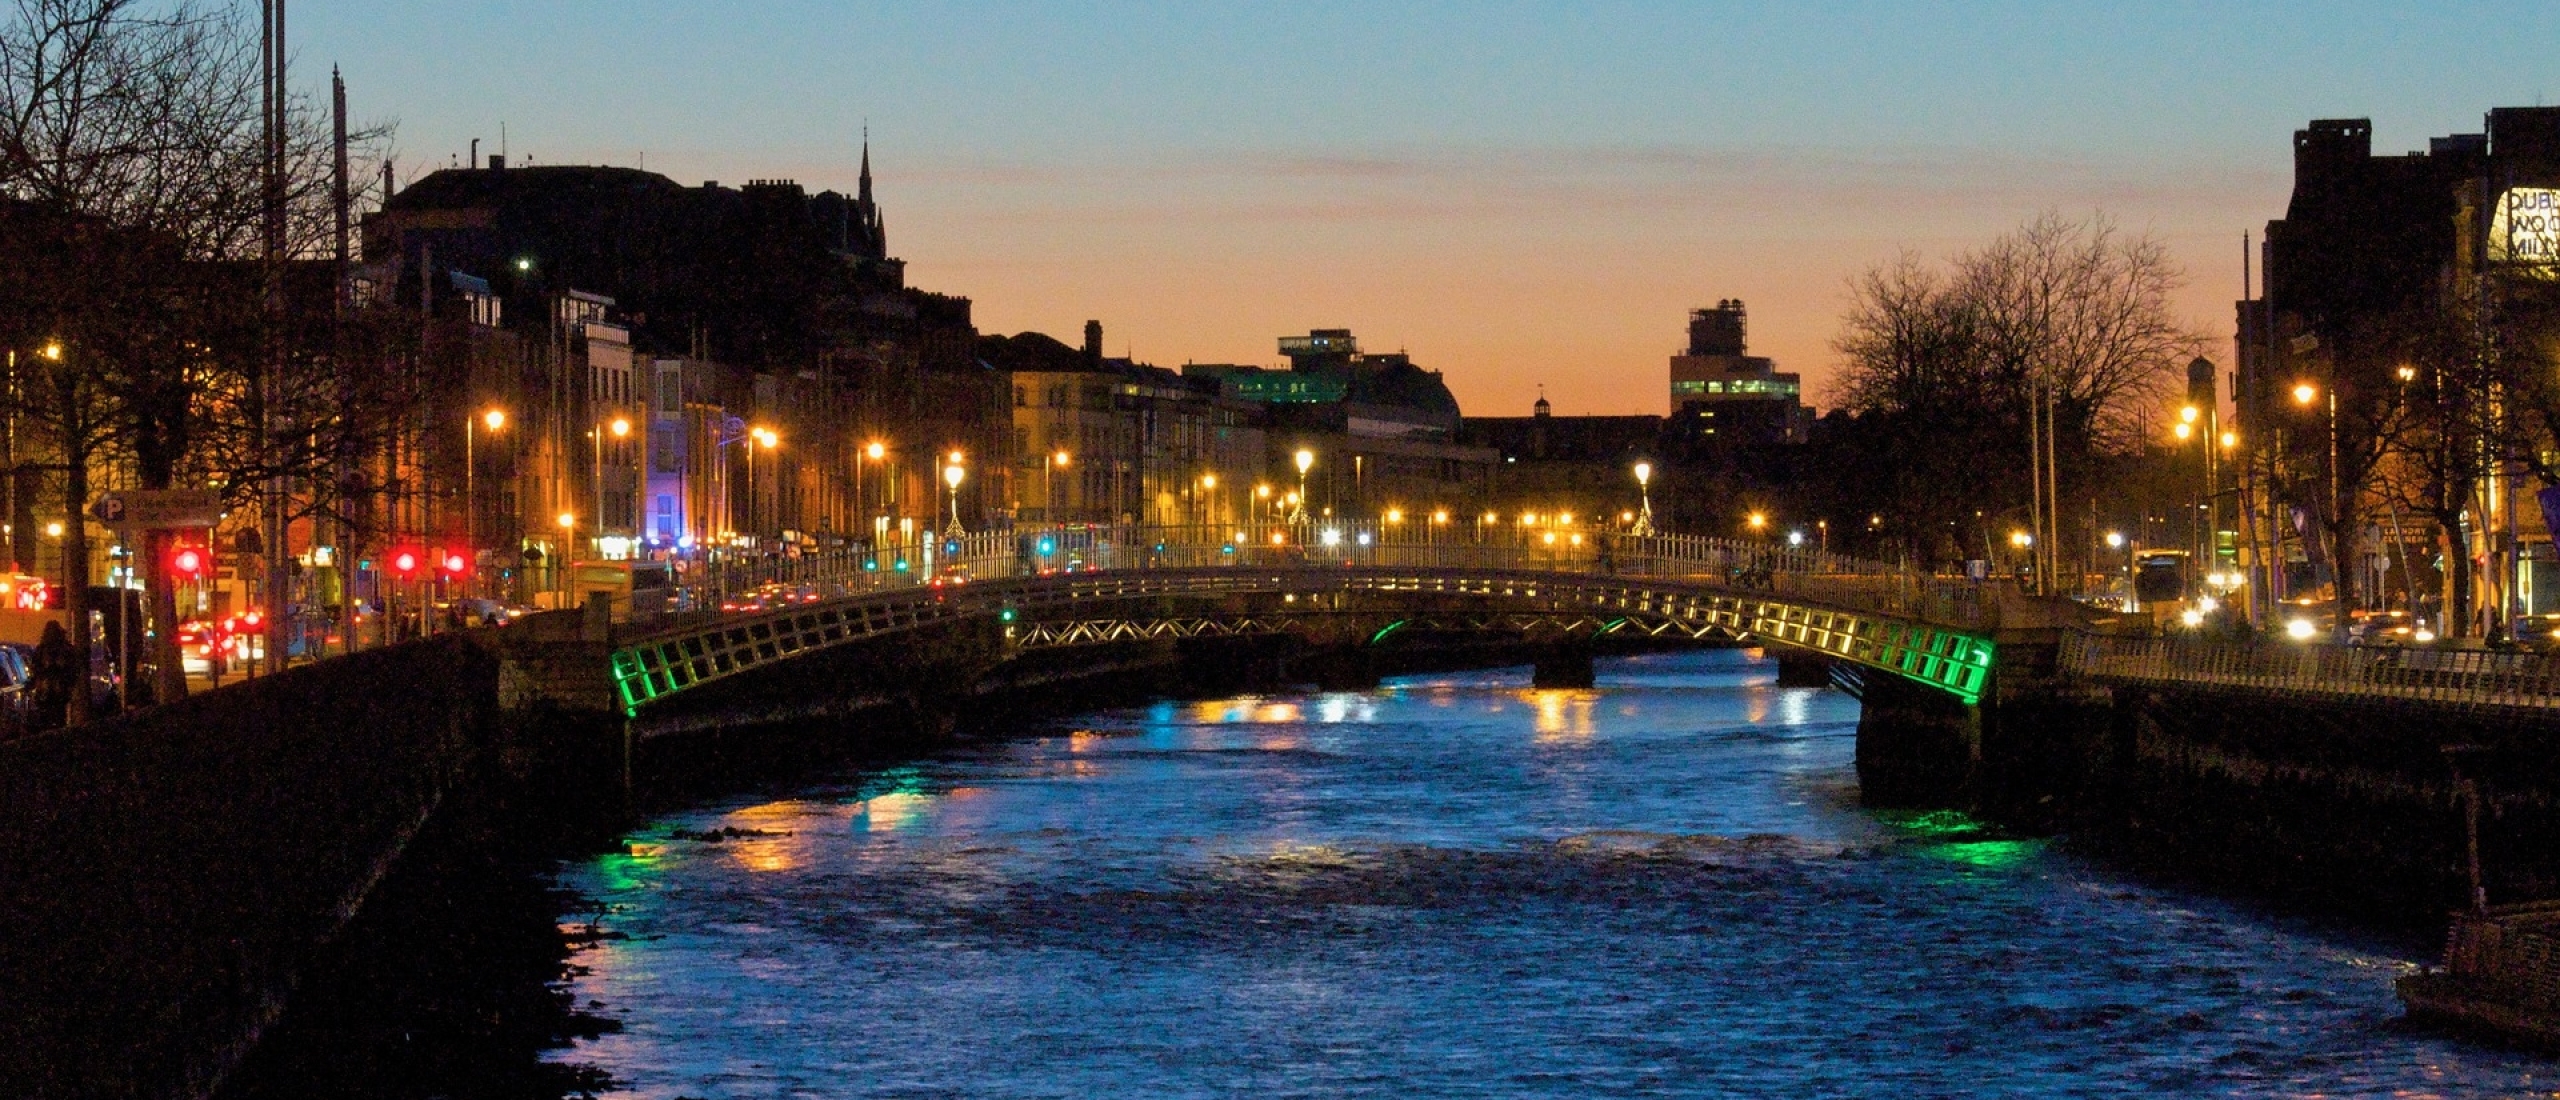 Stedentrip Dublin - mijn ervaringen tijdens een weekendje Dublin: